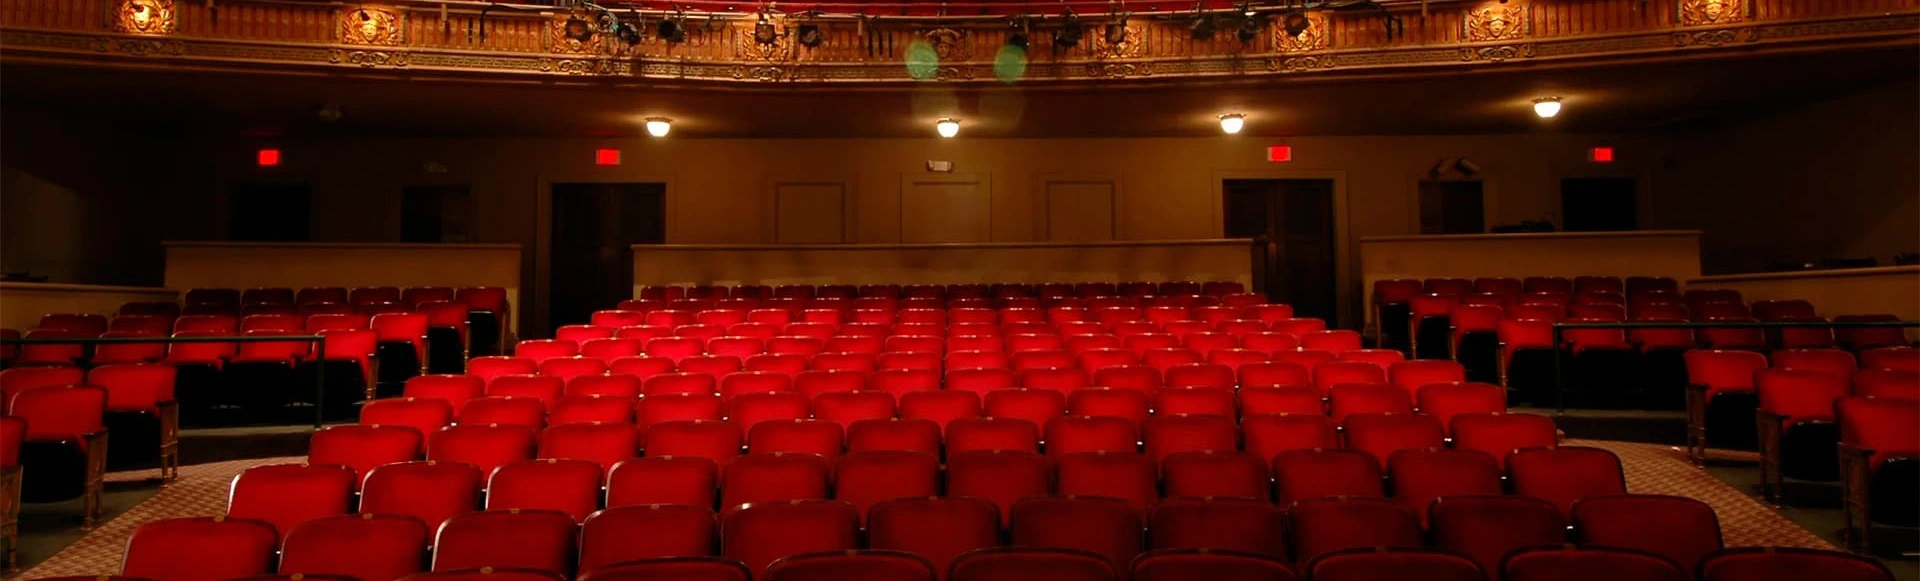 В театре Ермоловой открыта продажа билетов на спектакли первой недели января
